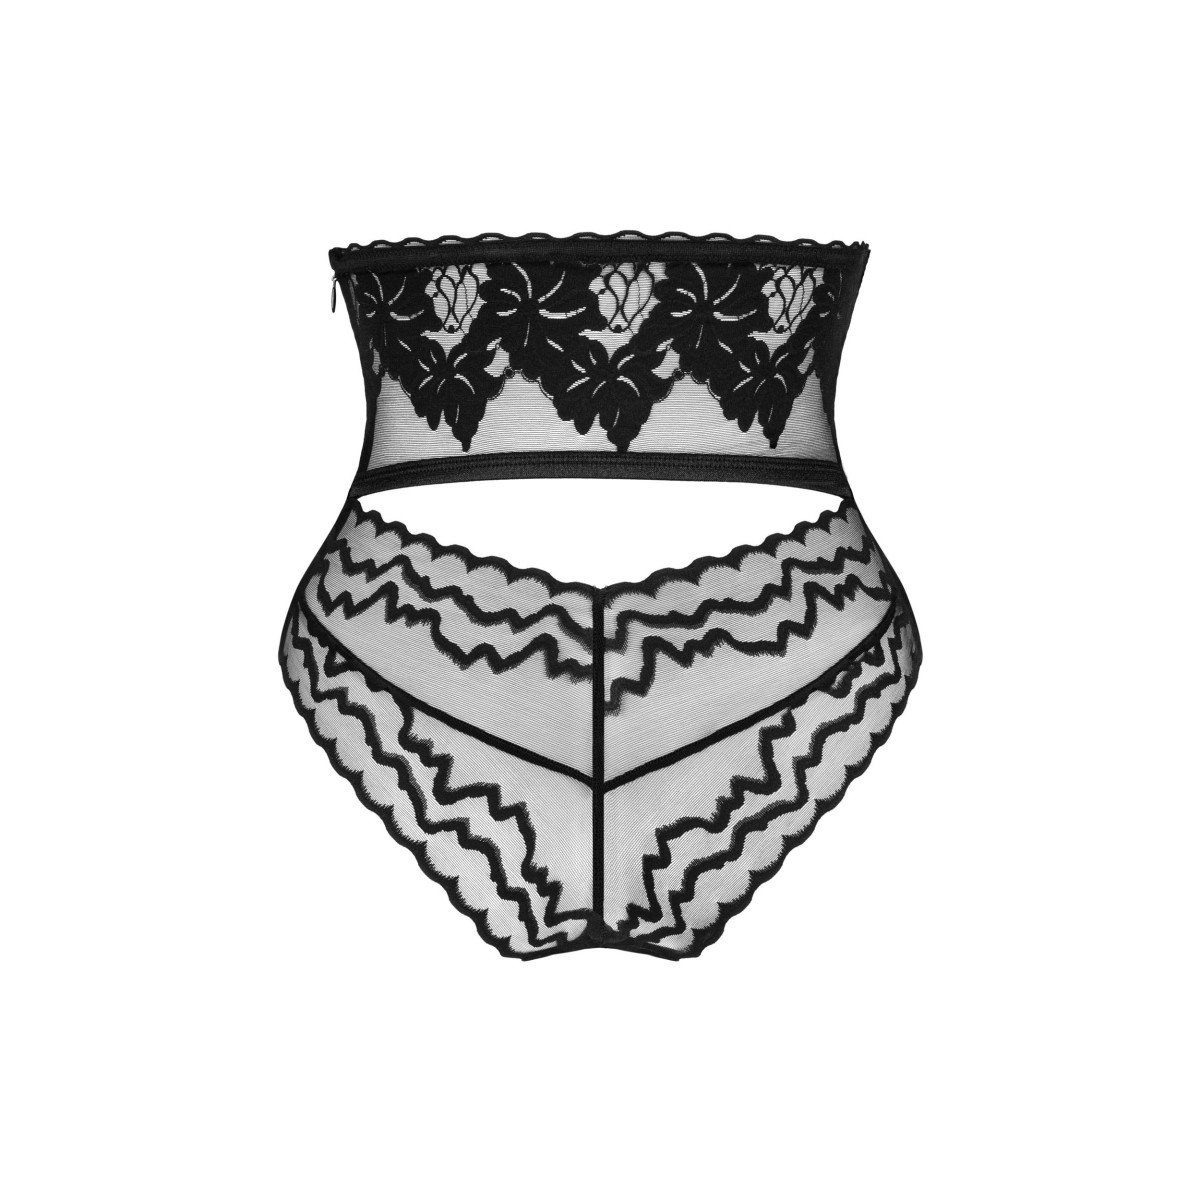 Panty High-Waist Obsessive 1-St) Arienna (einzel, Panty schwarz transparent